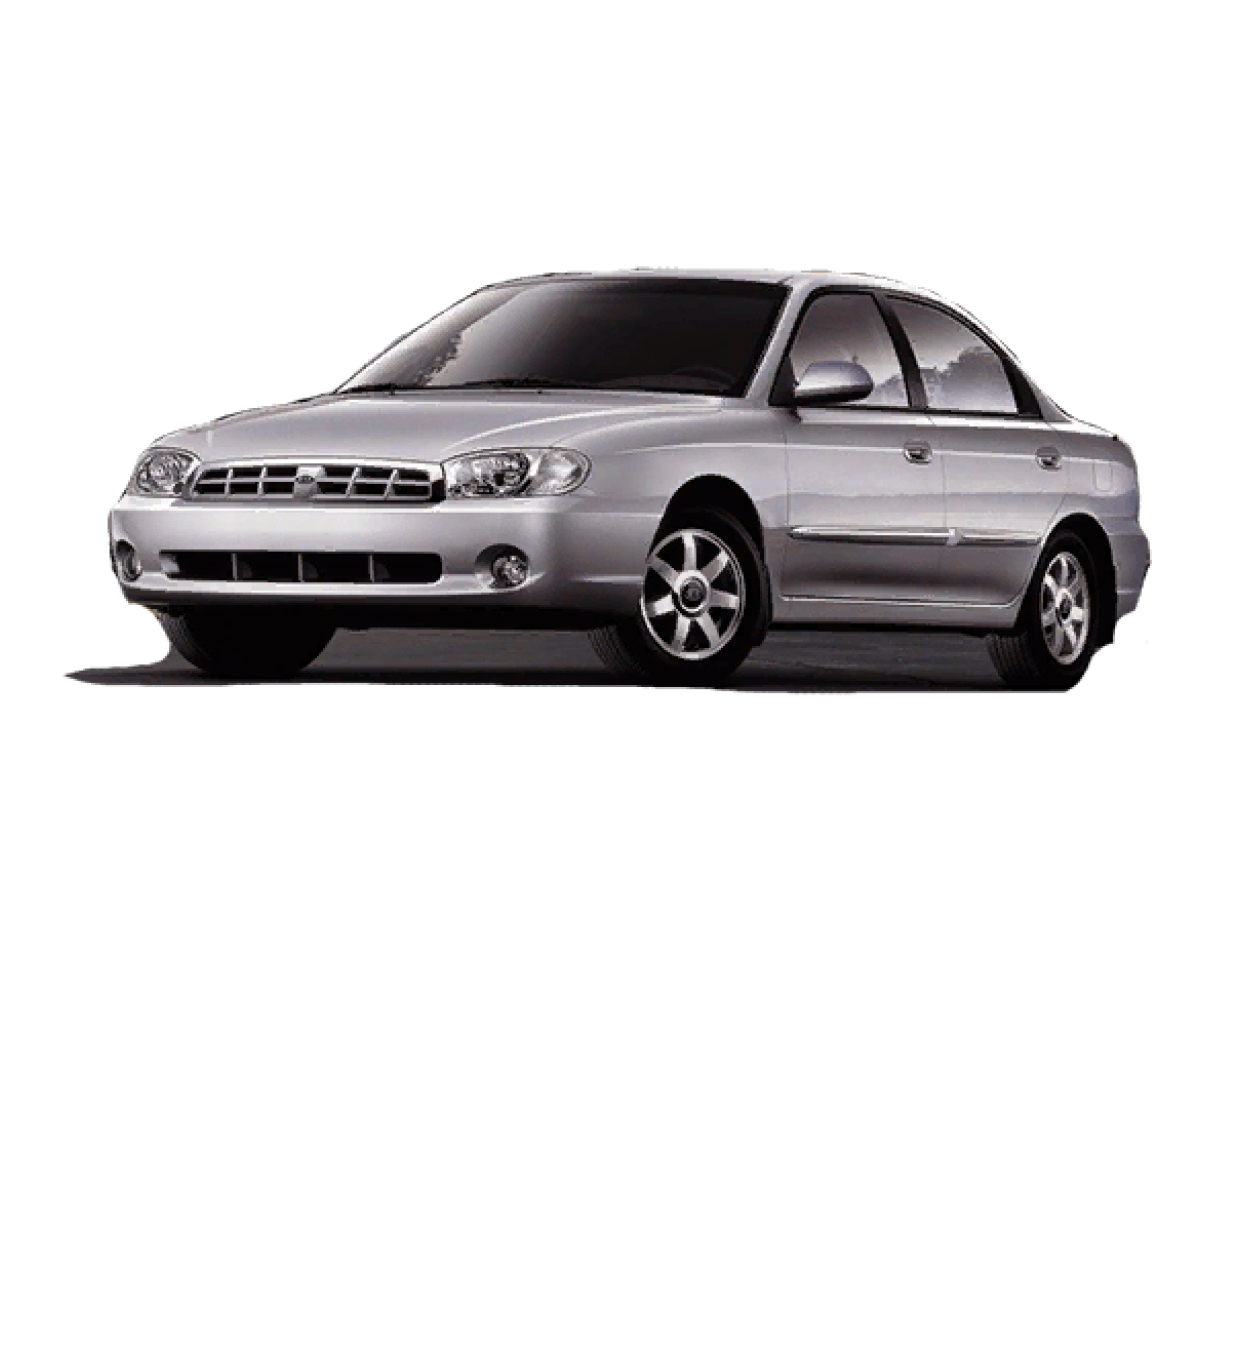 Kia Sephia II 1.8 126 Hp 2001 - 2004